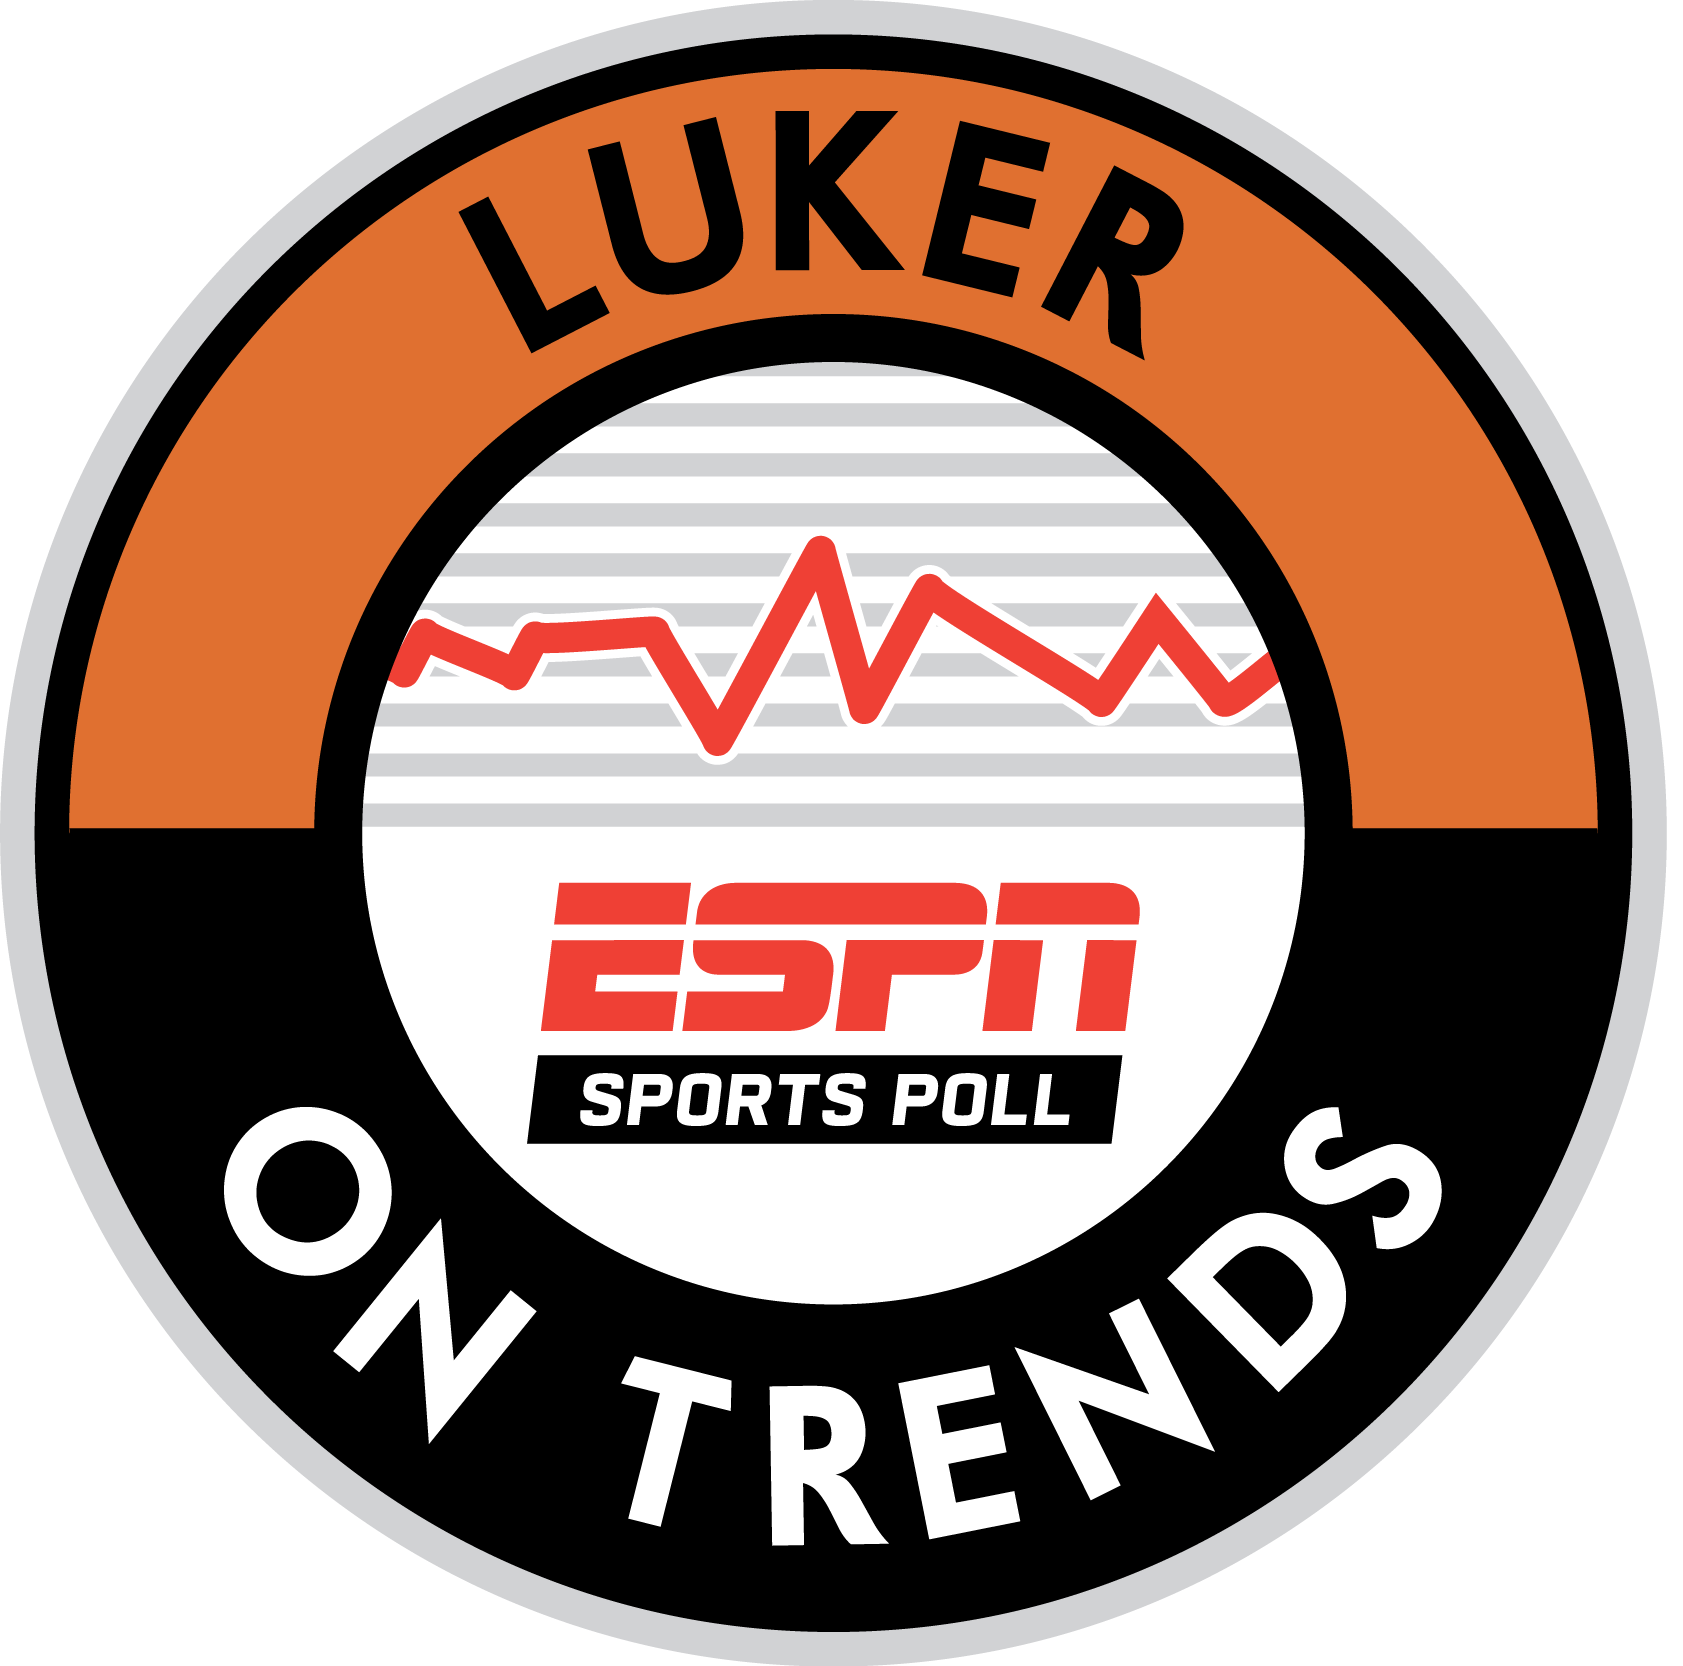 Luker on Trends Logo